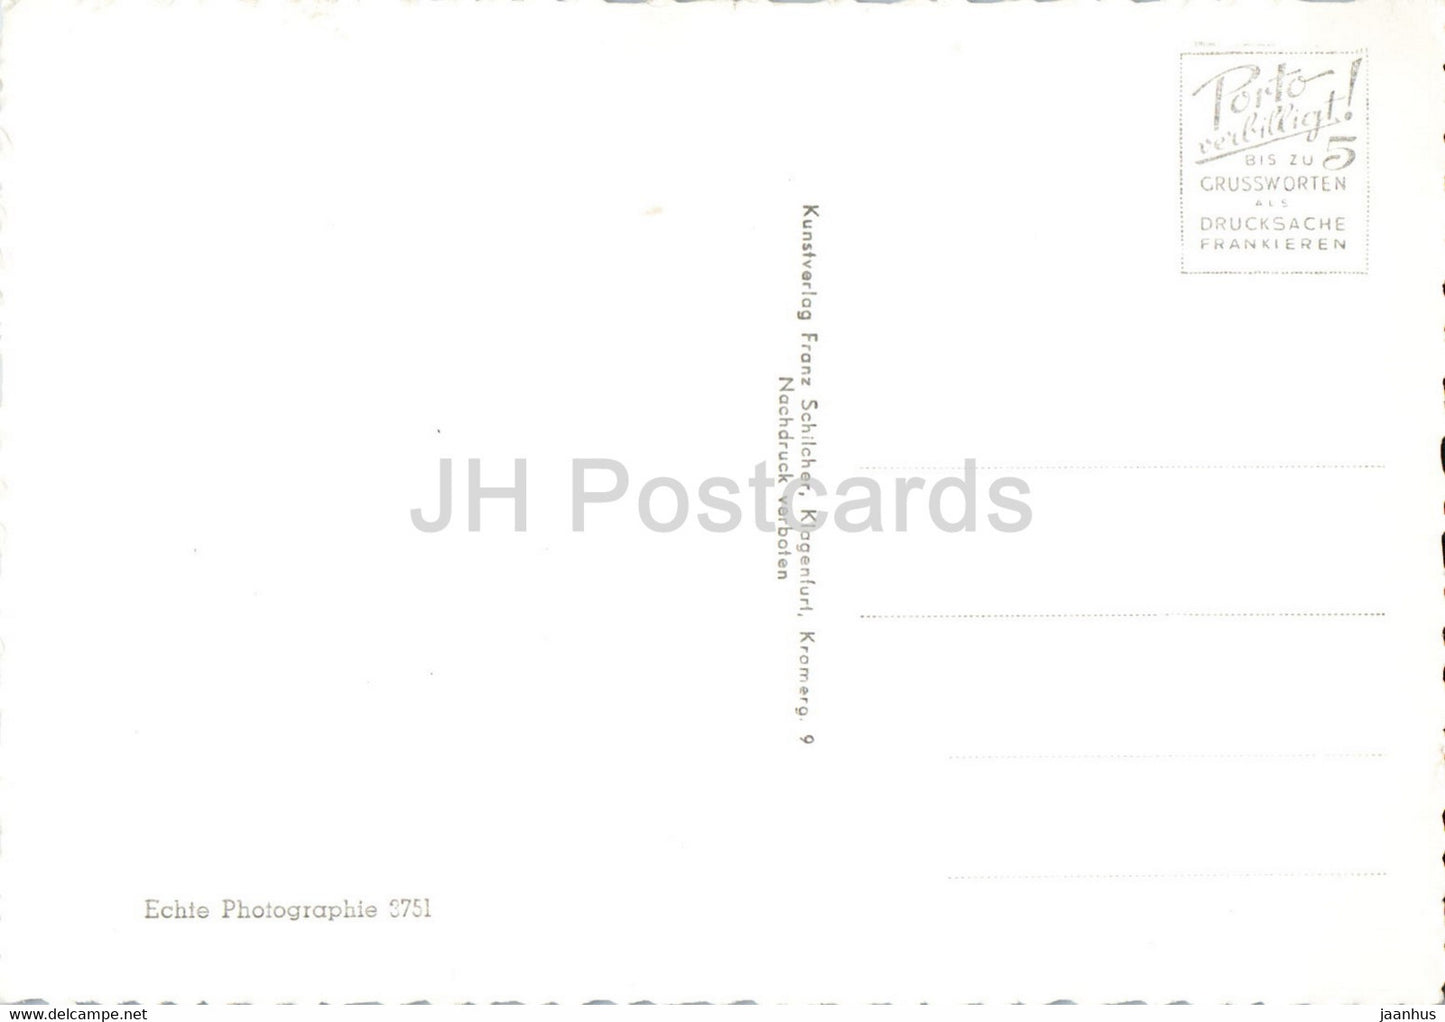 Worthersee - 3751 - old postcard - Austria - unused